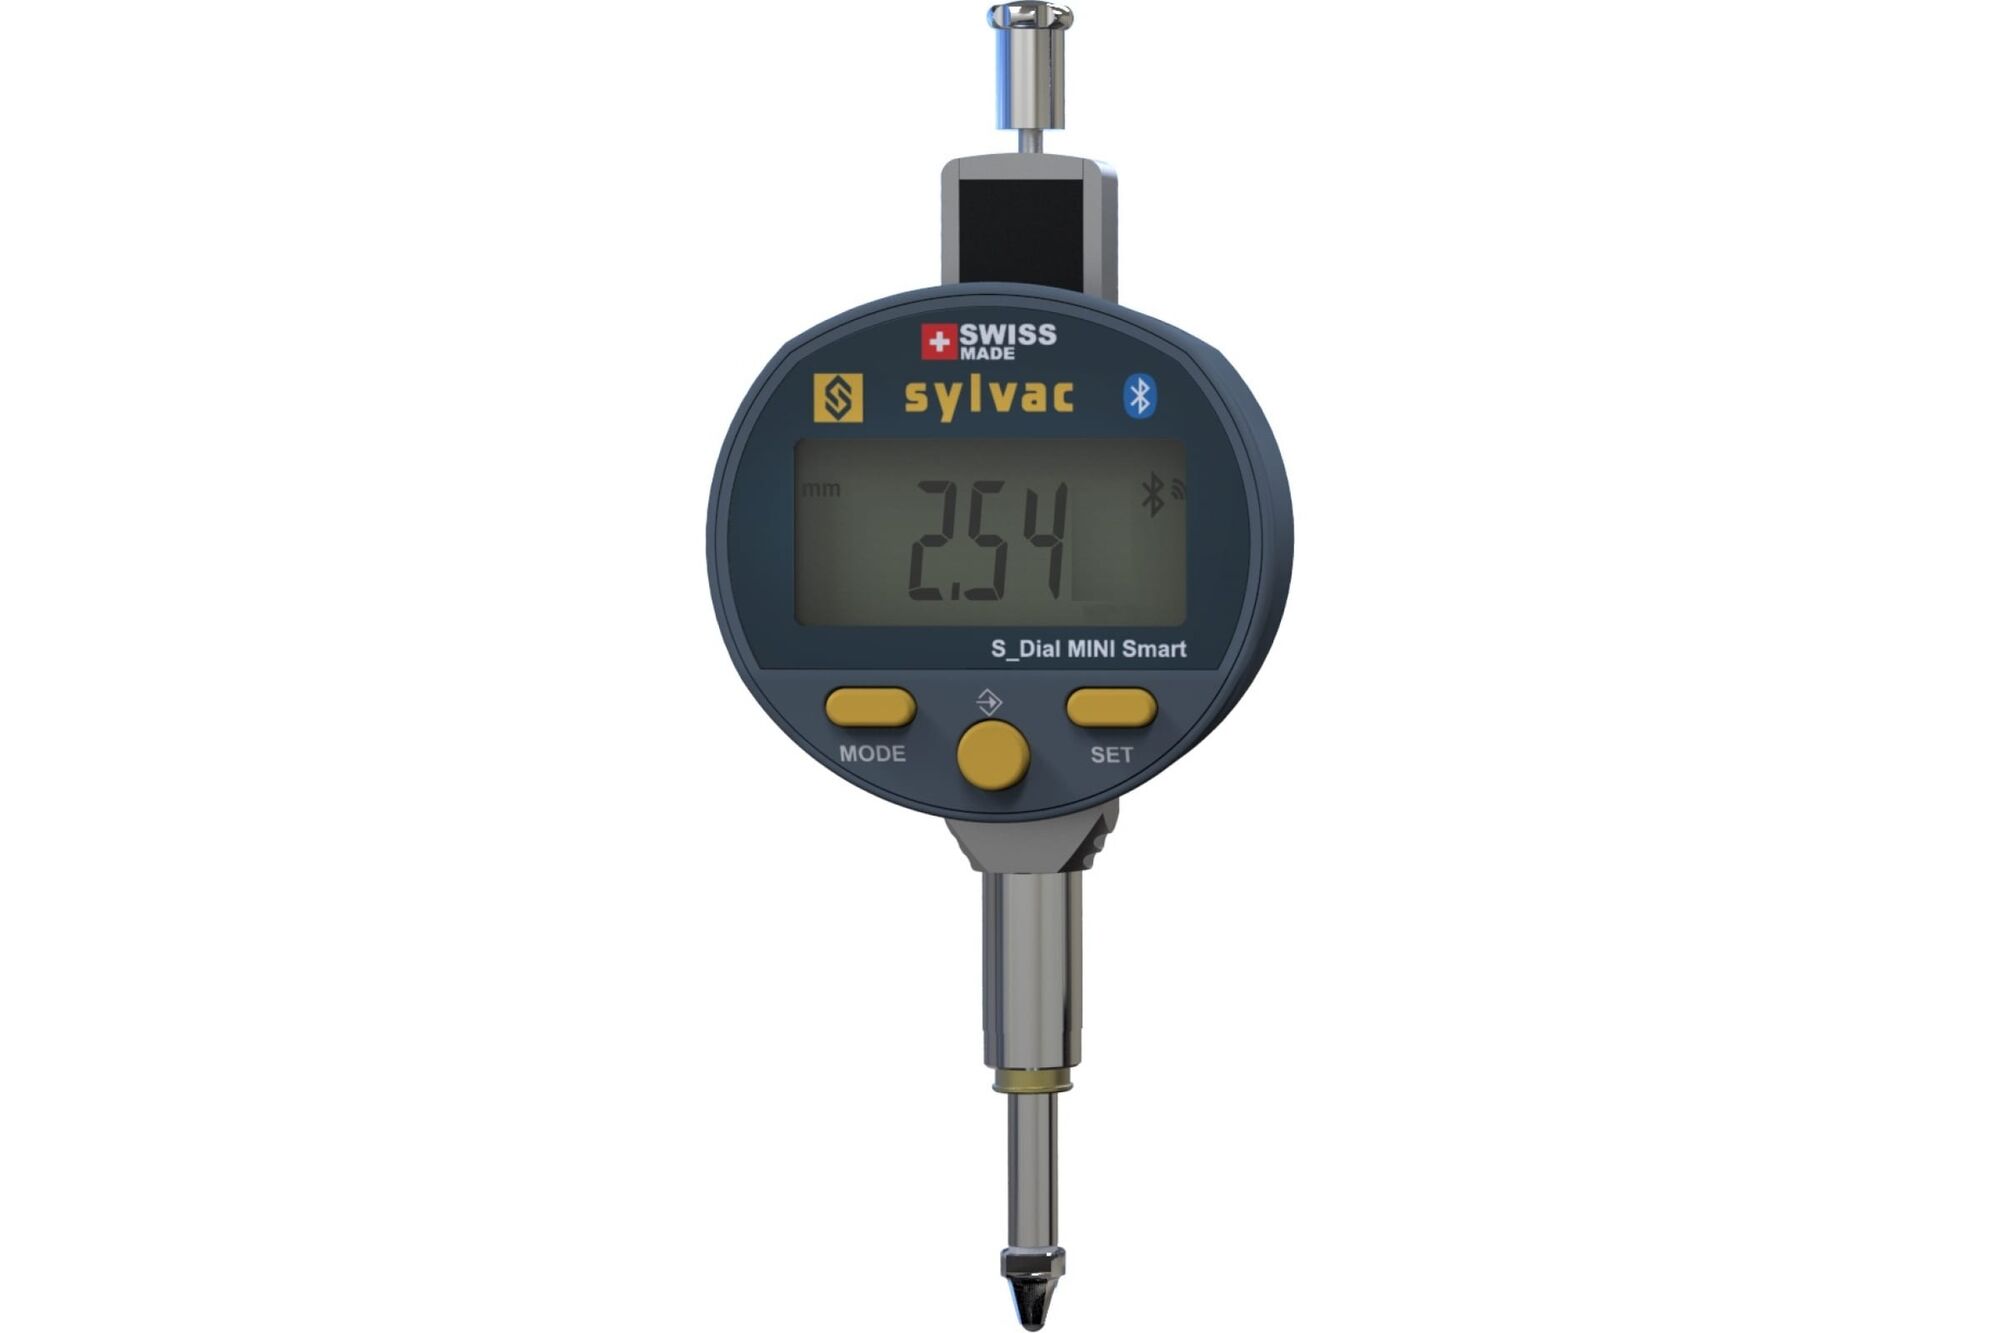 Индикаторная головка Sylvac SDial MINI Smart S 12.50.01 805-6121